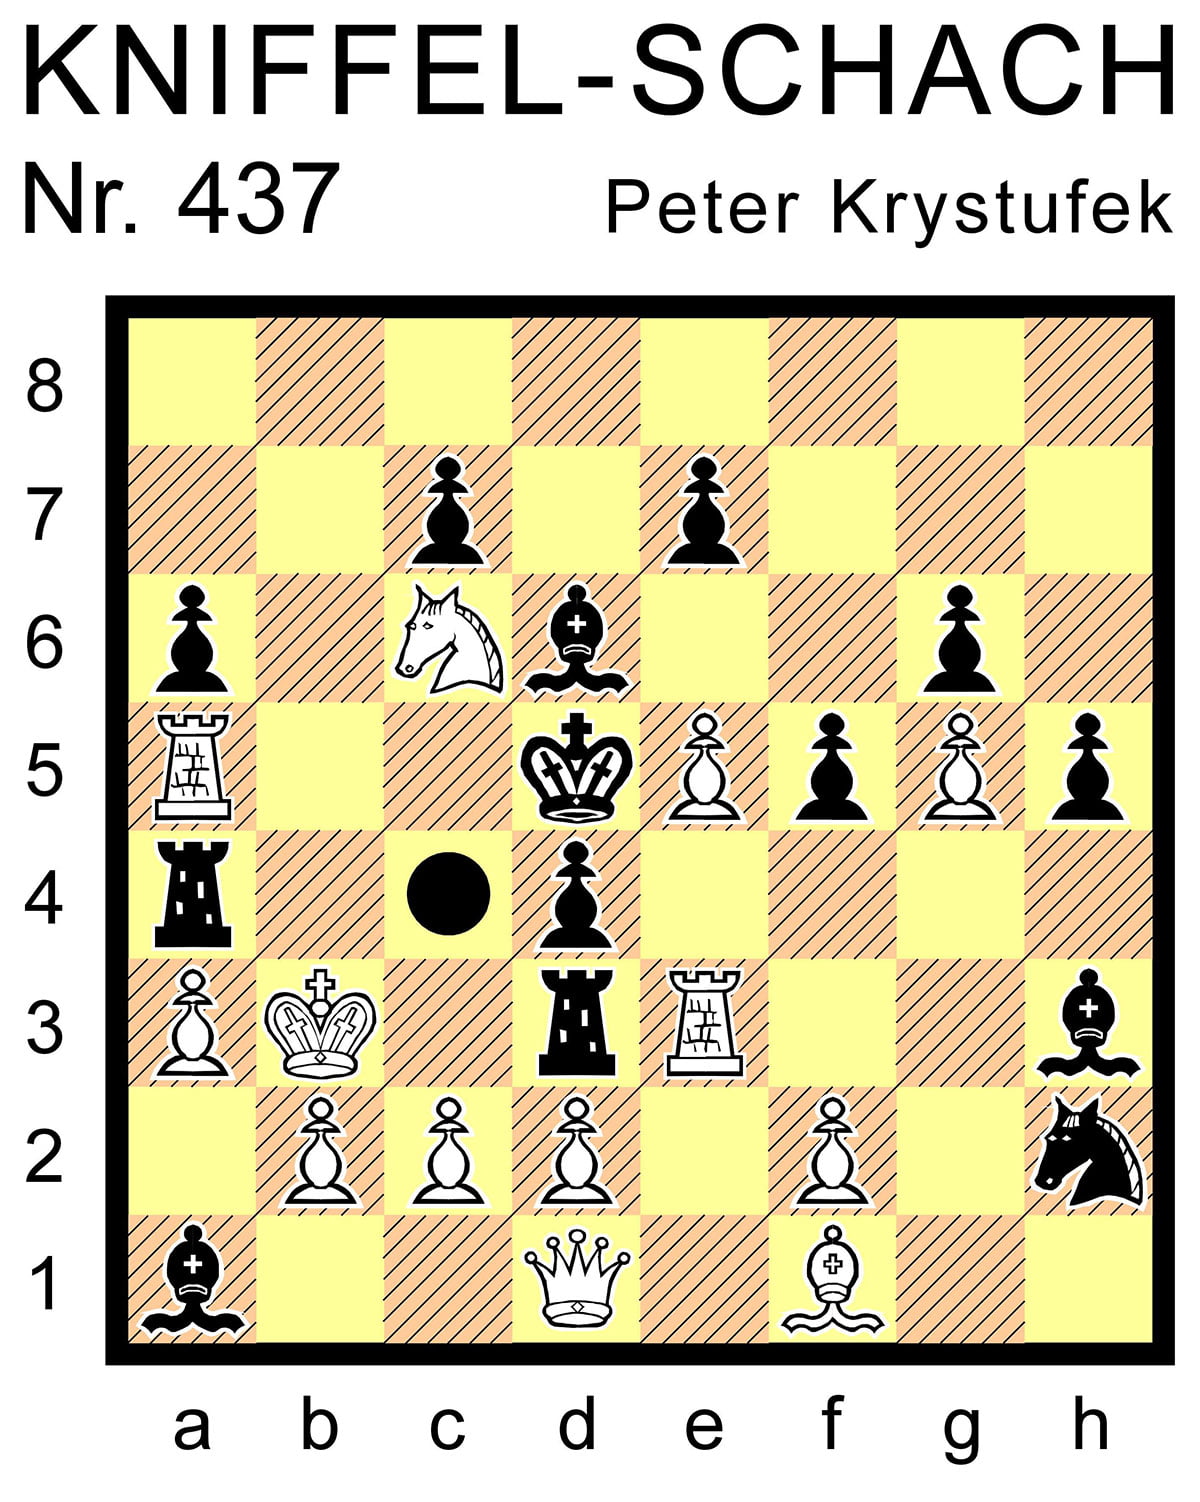 Kniffel-Schach Nr. 437